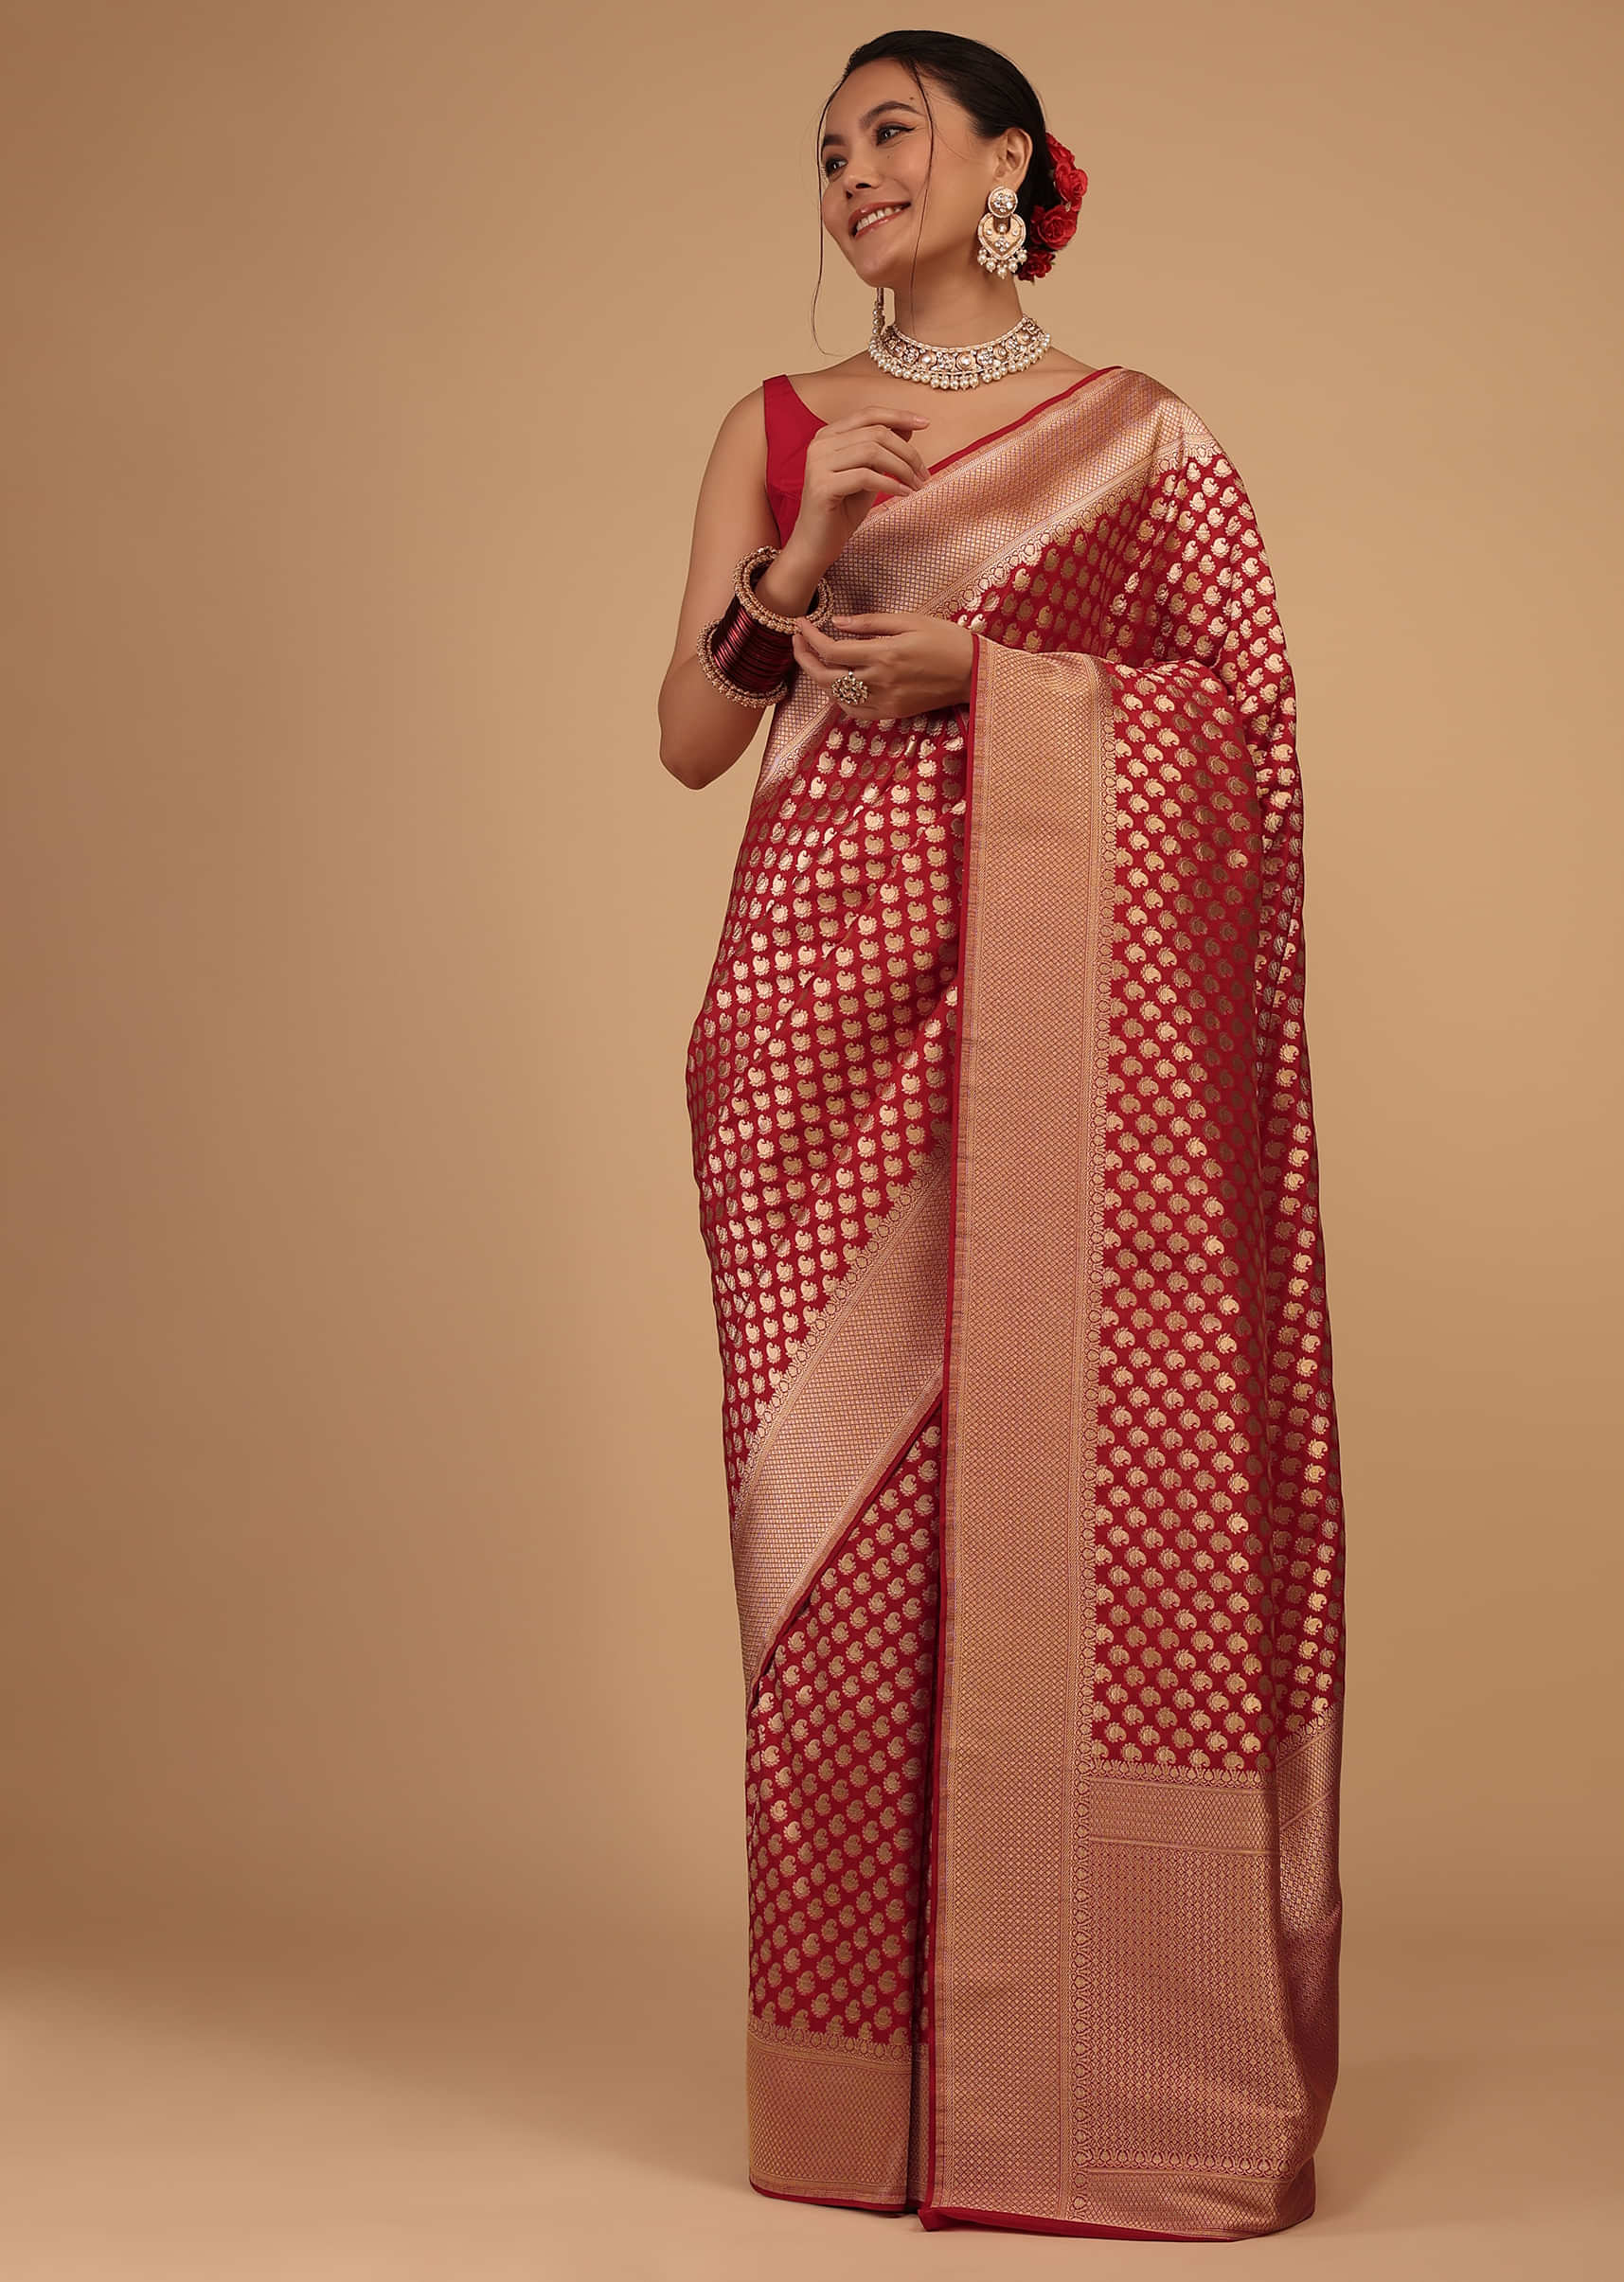 Kalki True Red Saree In Pure Banarasi Silk With Upada Zari Weave Butti Work